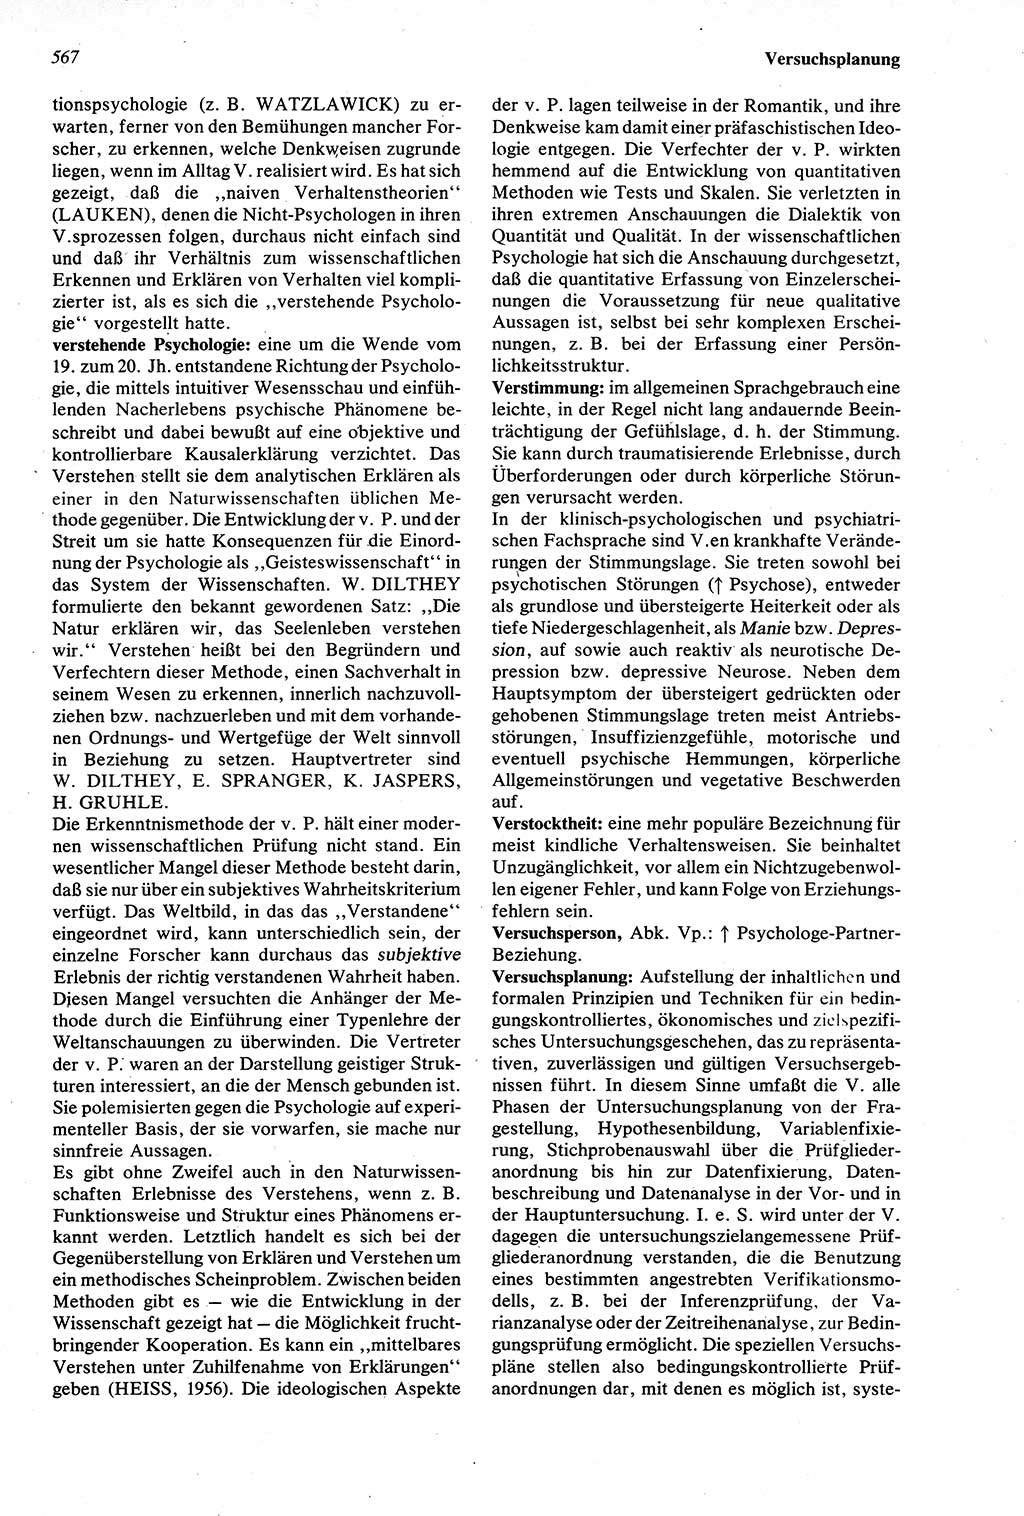 Wörterbuch der Psychologie [Deutsche Demokratische Republik (DDR)] 1976, Seite 567 (Wb. Psych. DDR 1976, S. 567)